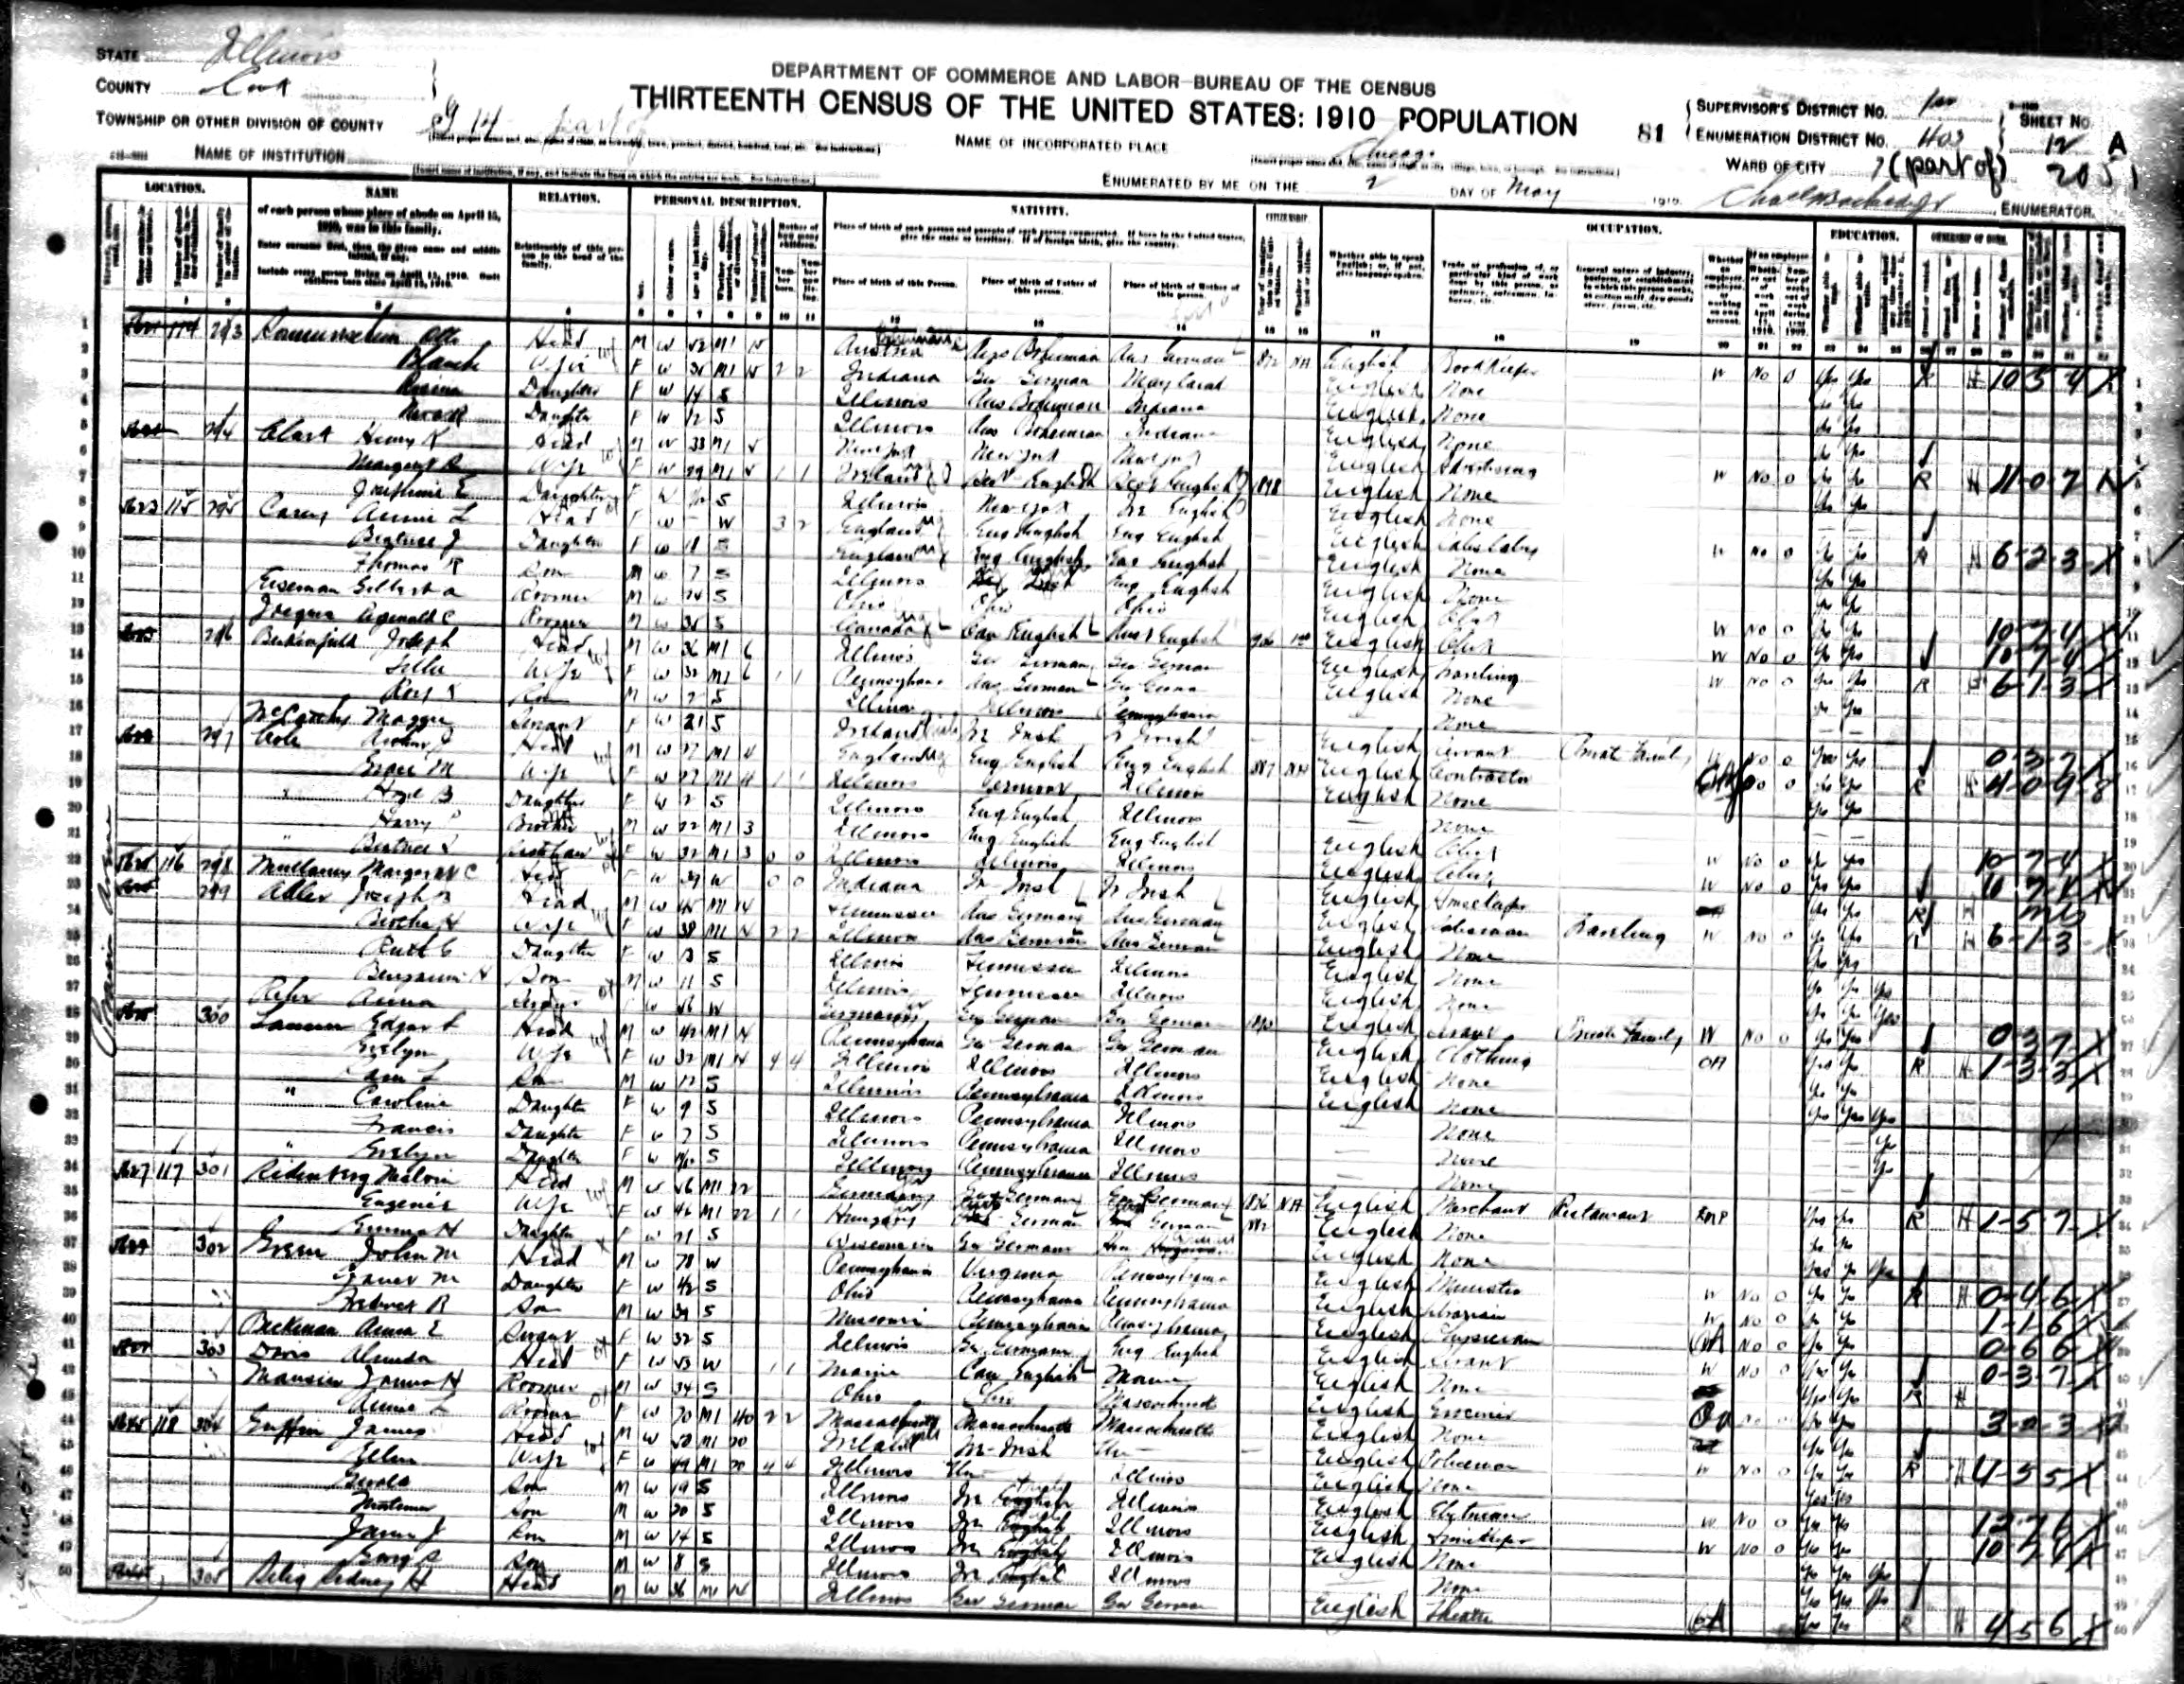 1910 US census Joseph B. Adler family